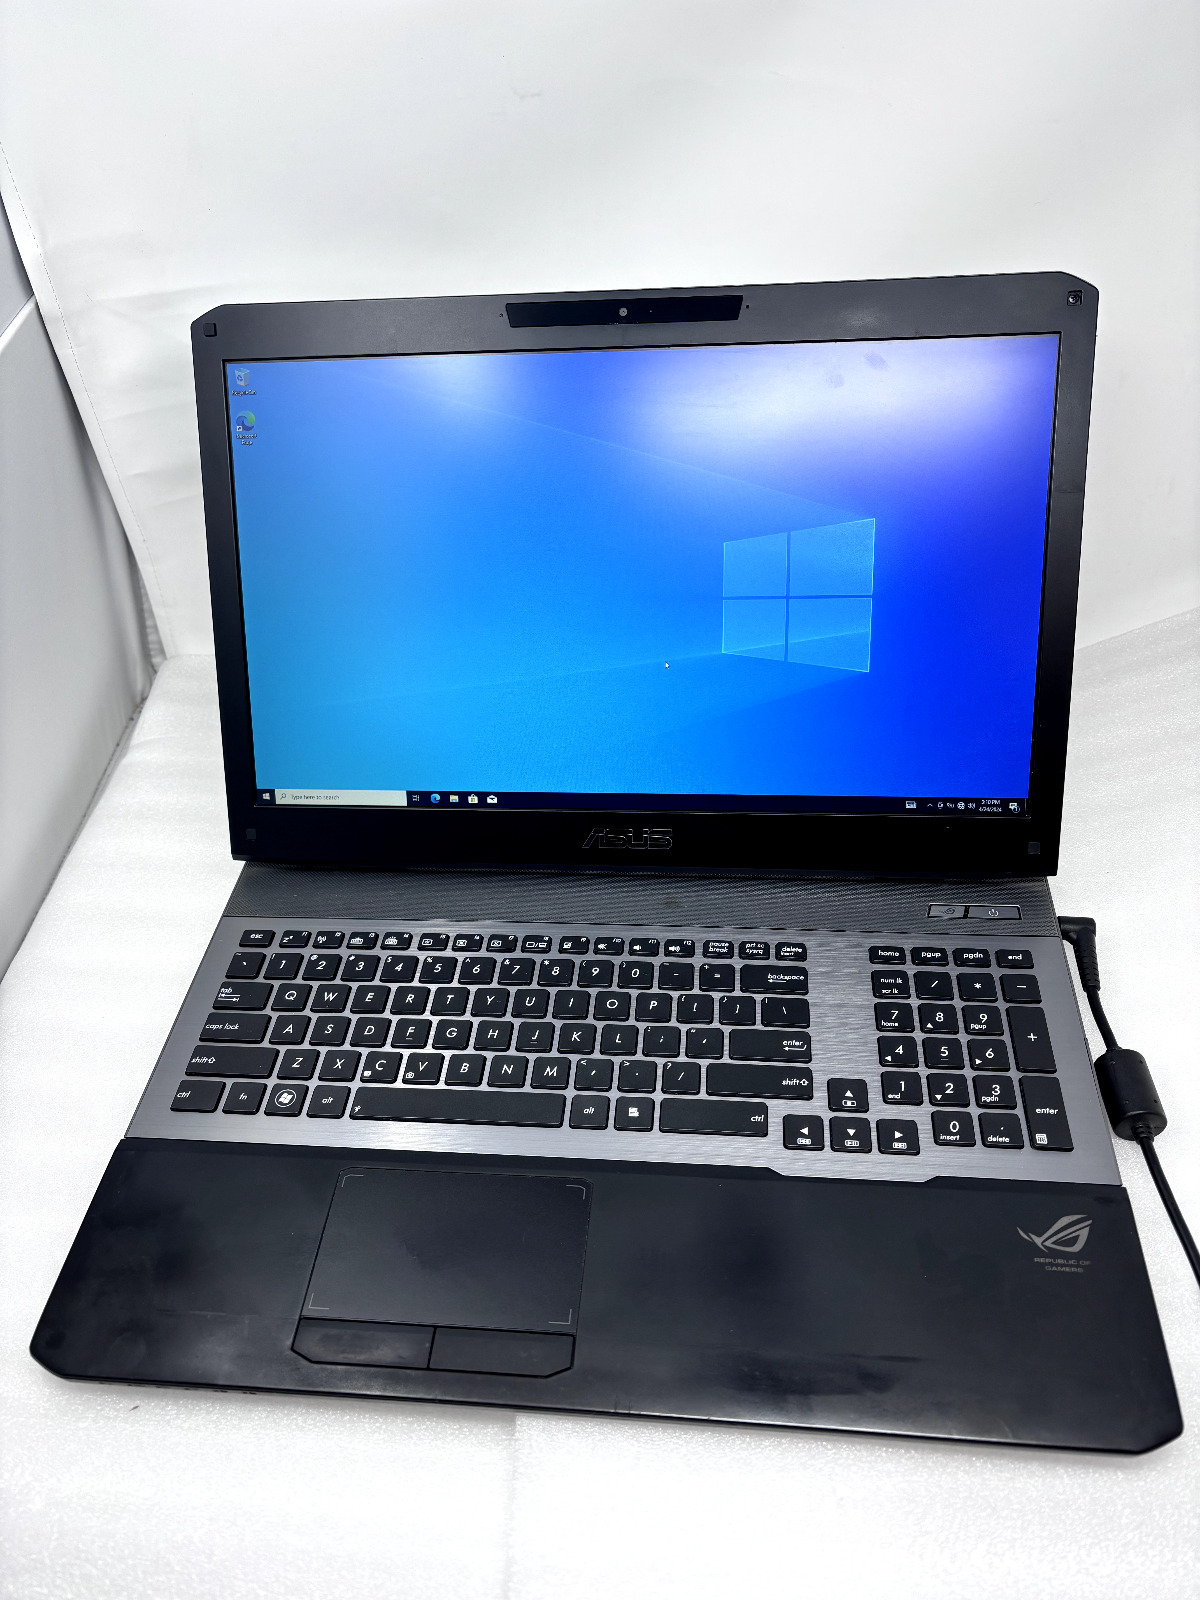 ASUS G75V ROG Gaming Laptop i7-3610QM 2.30 GHz -No Battery, Back Cover but Works